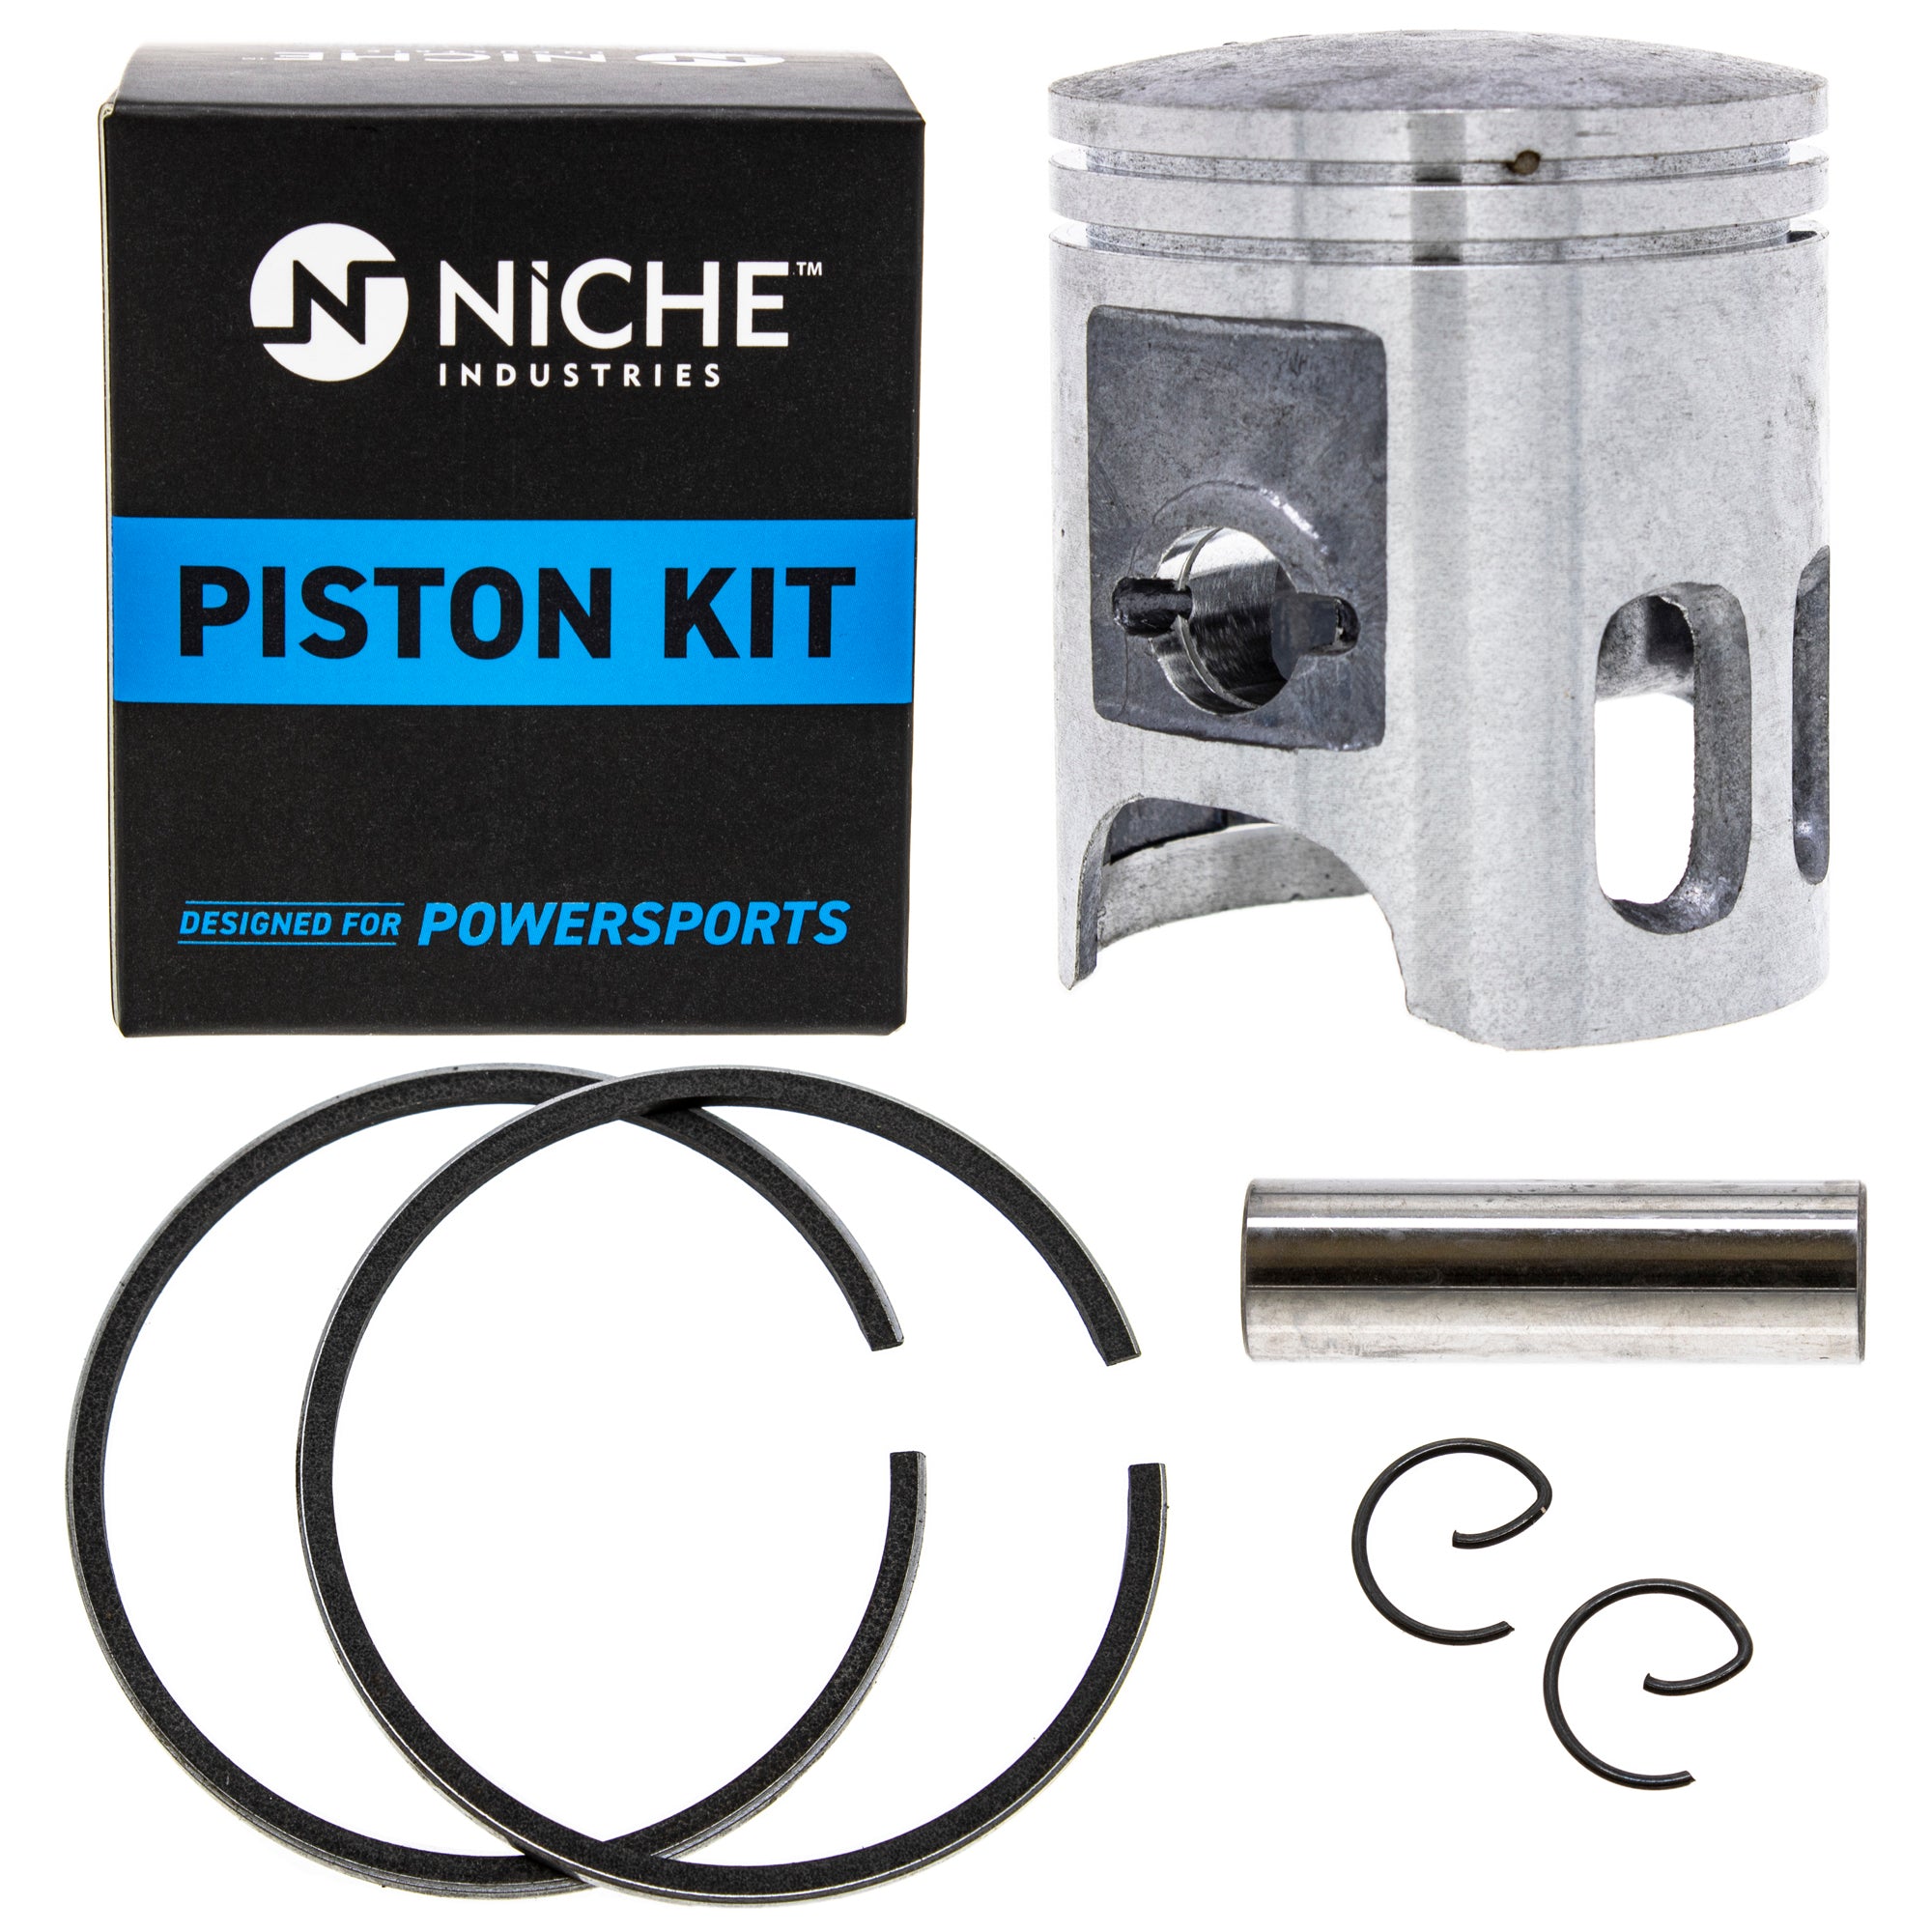 NICHE MK1001138 Piston Kit